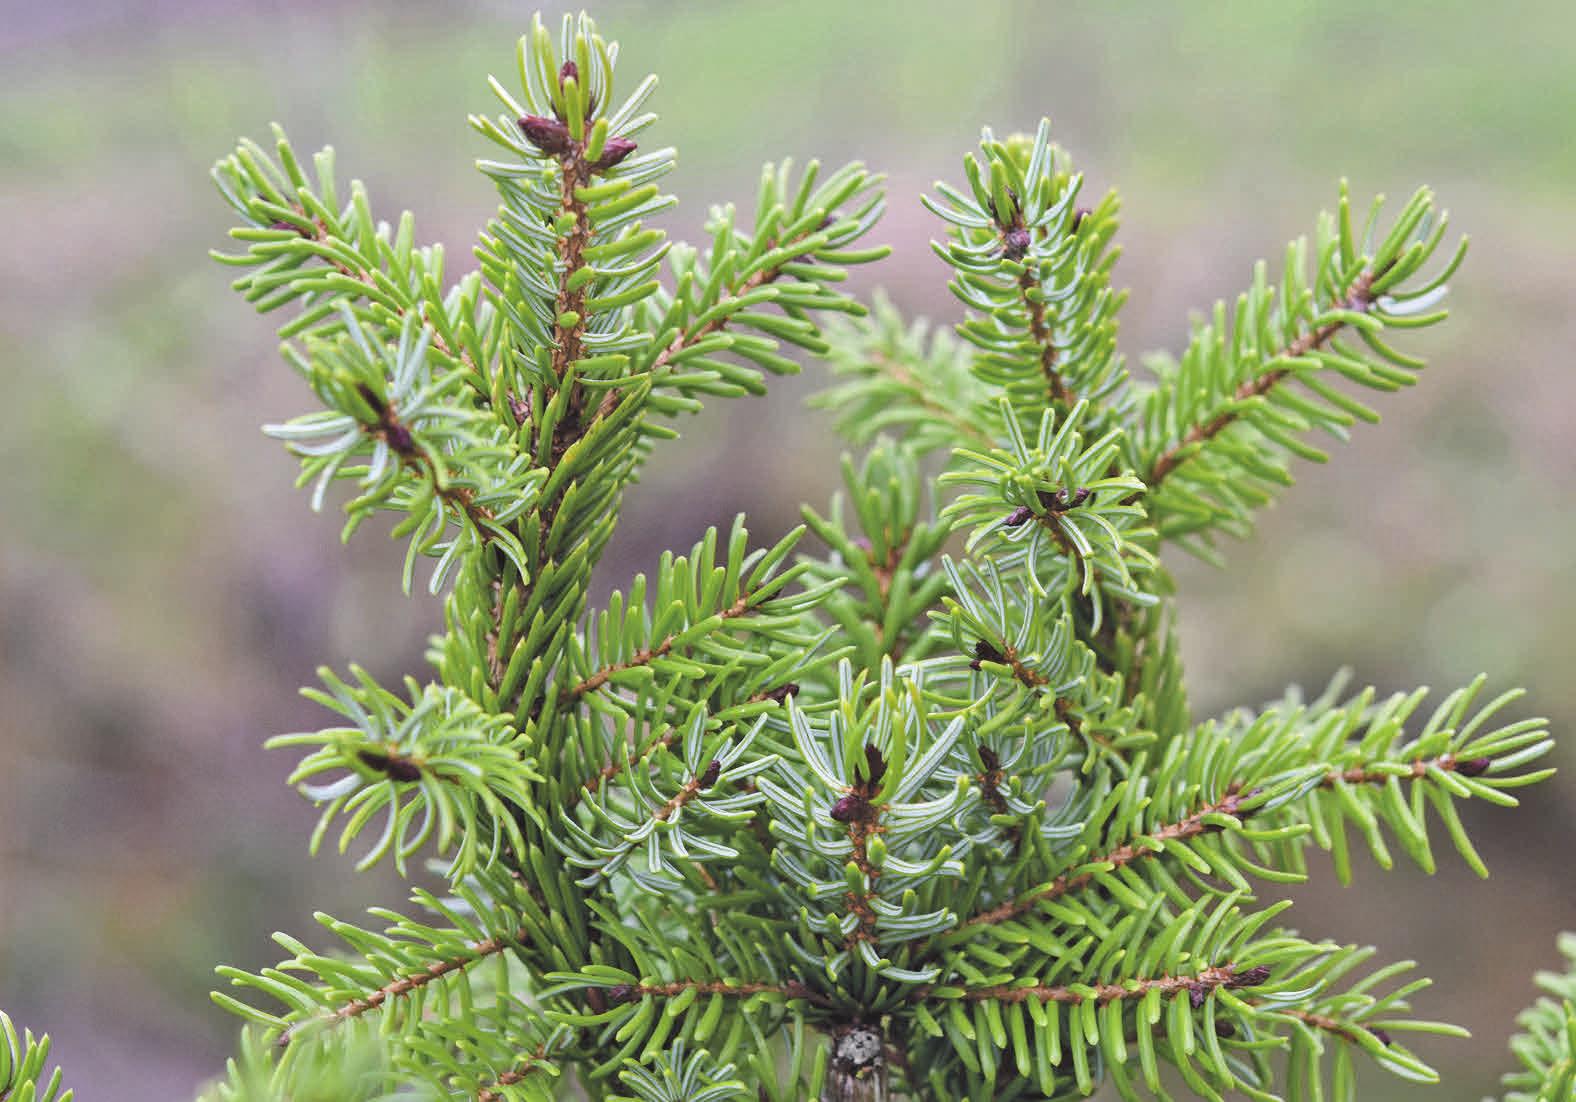 Die Landwirtschaftskammer Niedersachsen gibt Tipps, wie der Weihnachtsbaum frisch bleibt. Foto: JackieLou DL/Pixabay